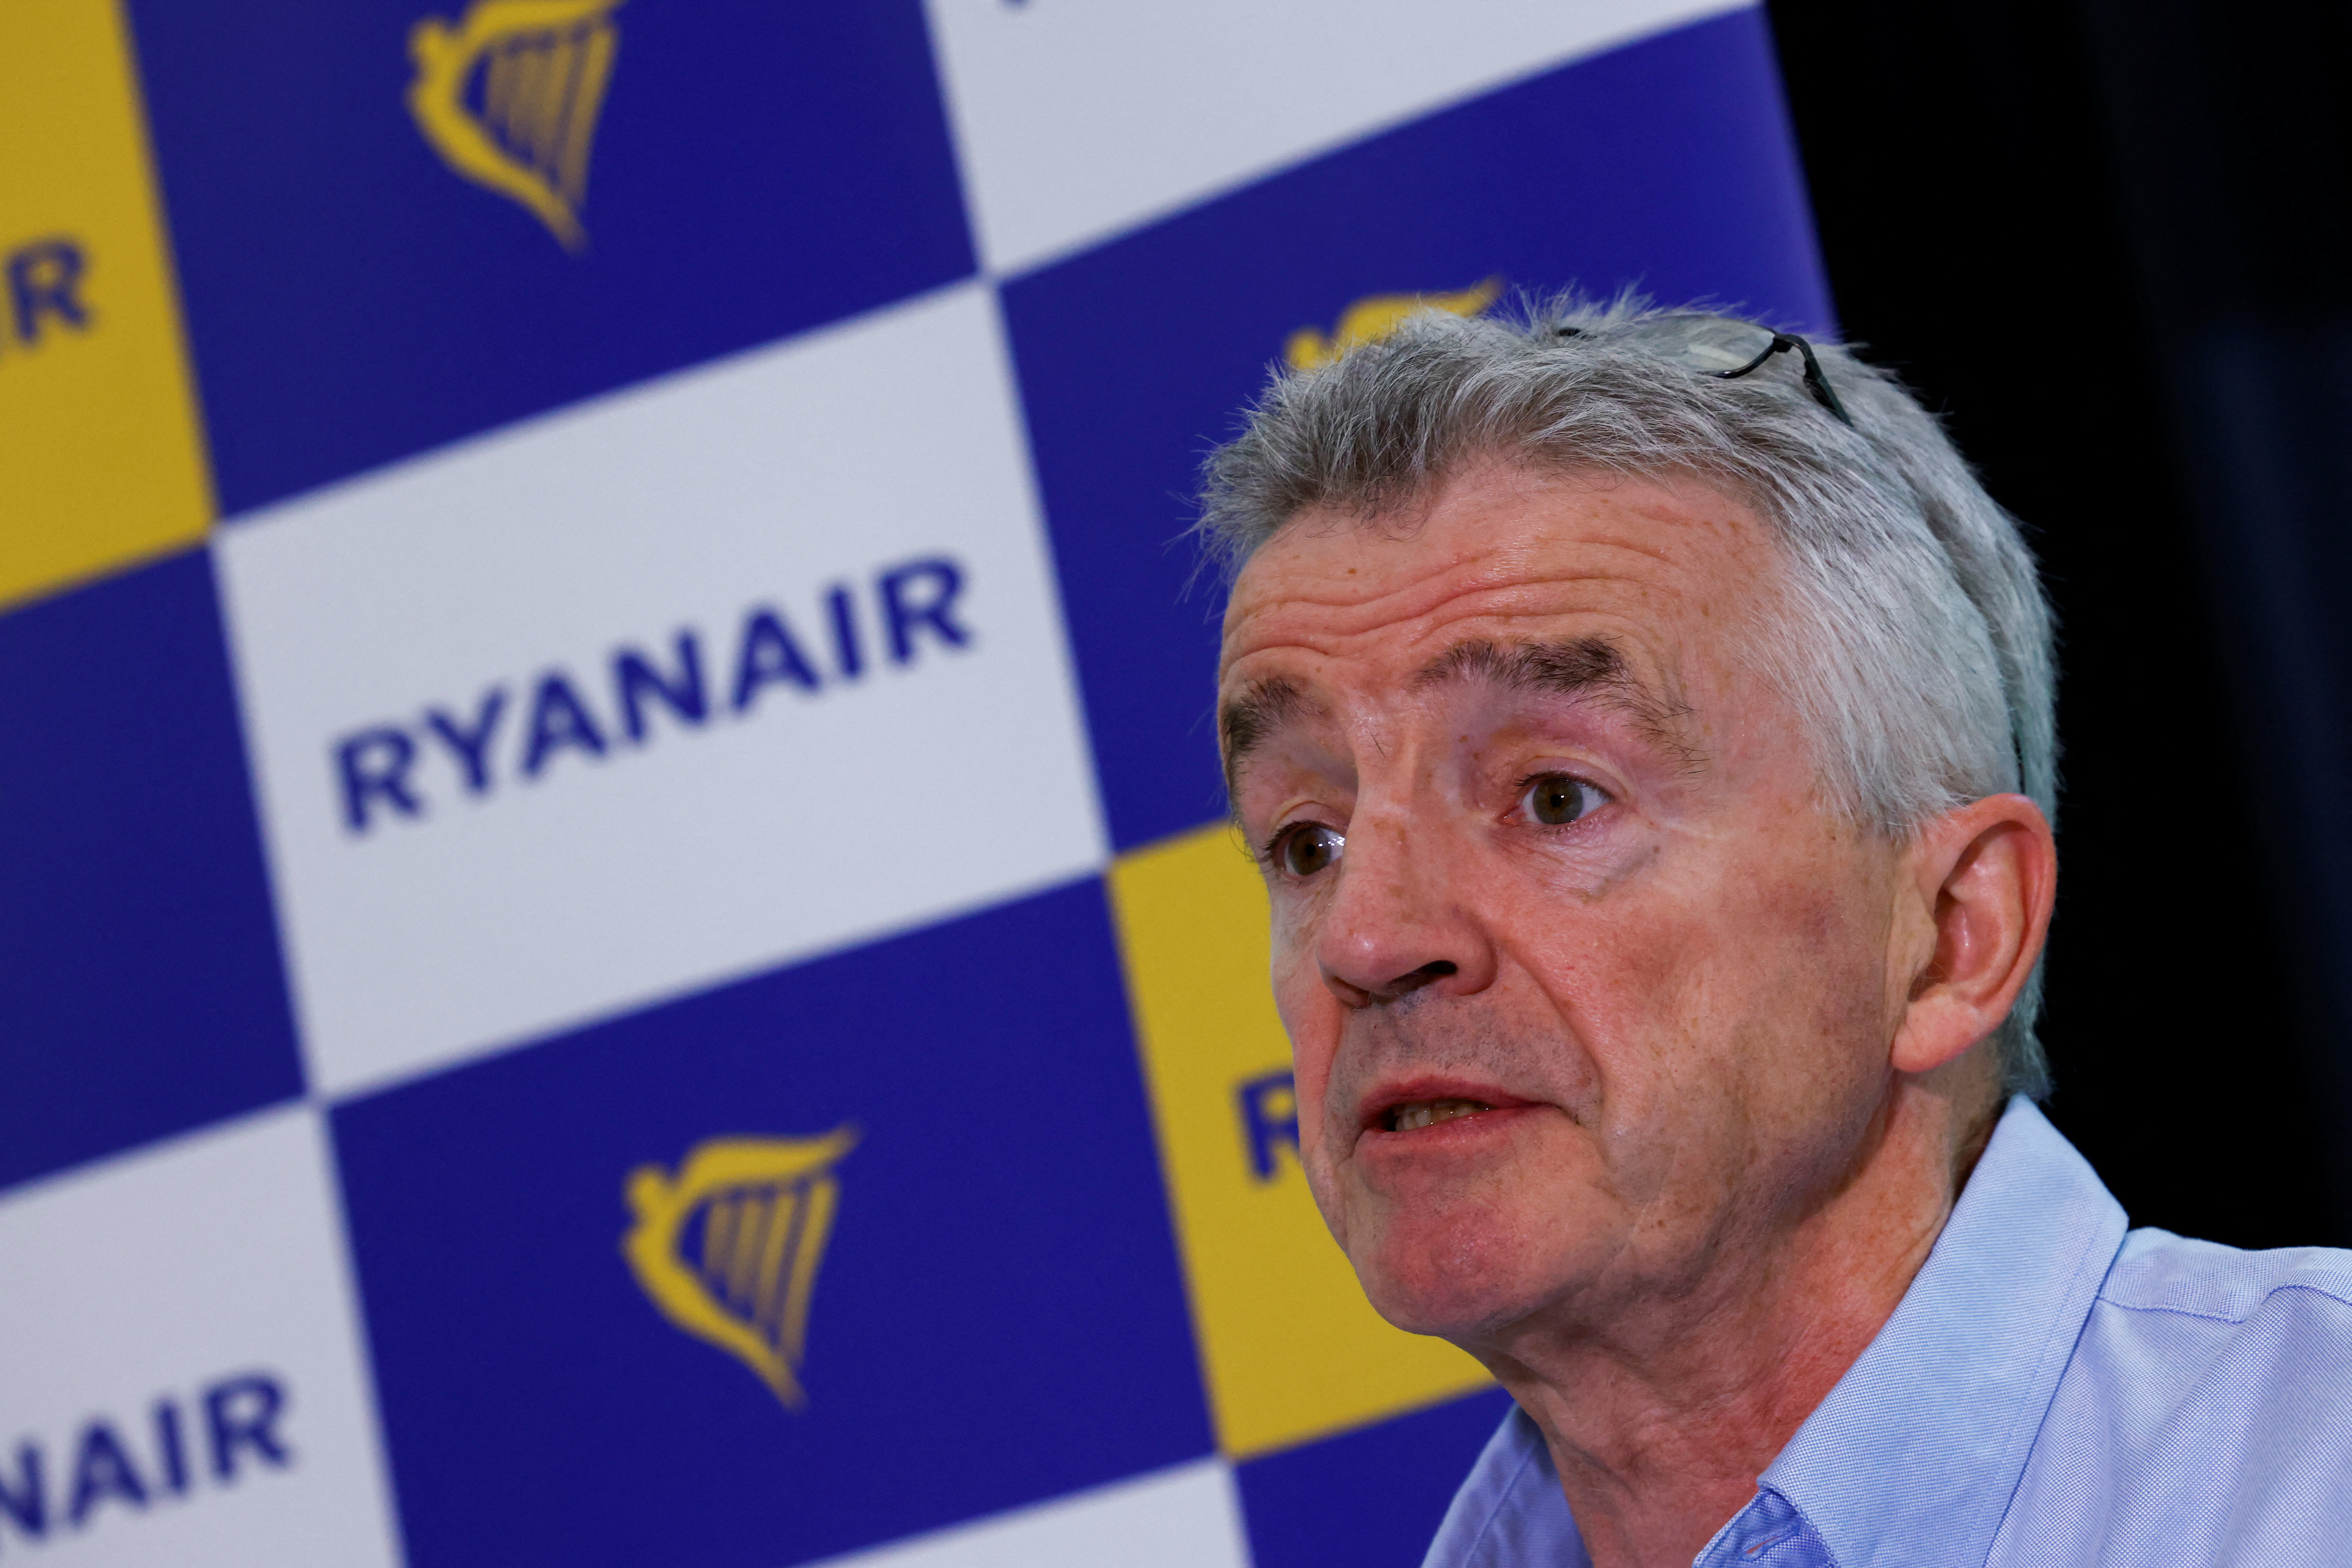 Ryanair : Michael O'Leary ne craint pas les grèves et taxe des syndicats de pilotes de 